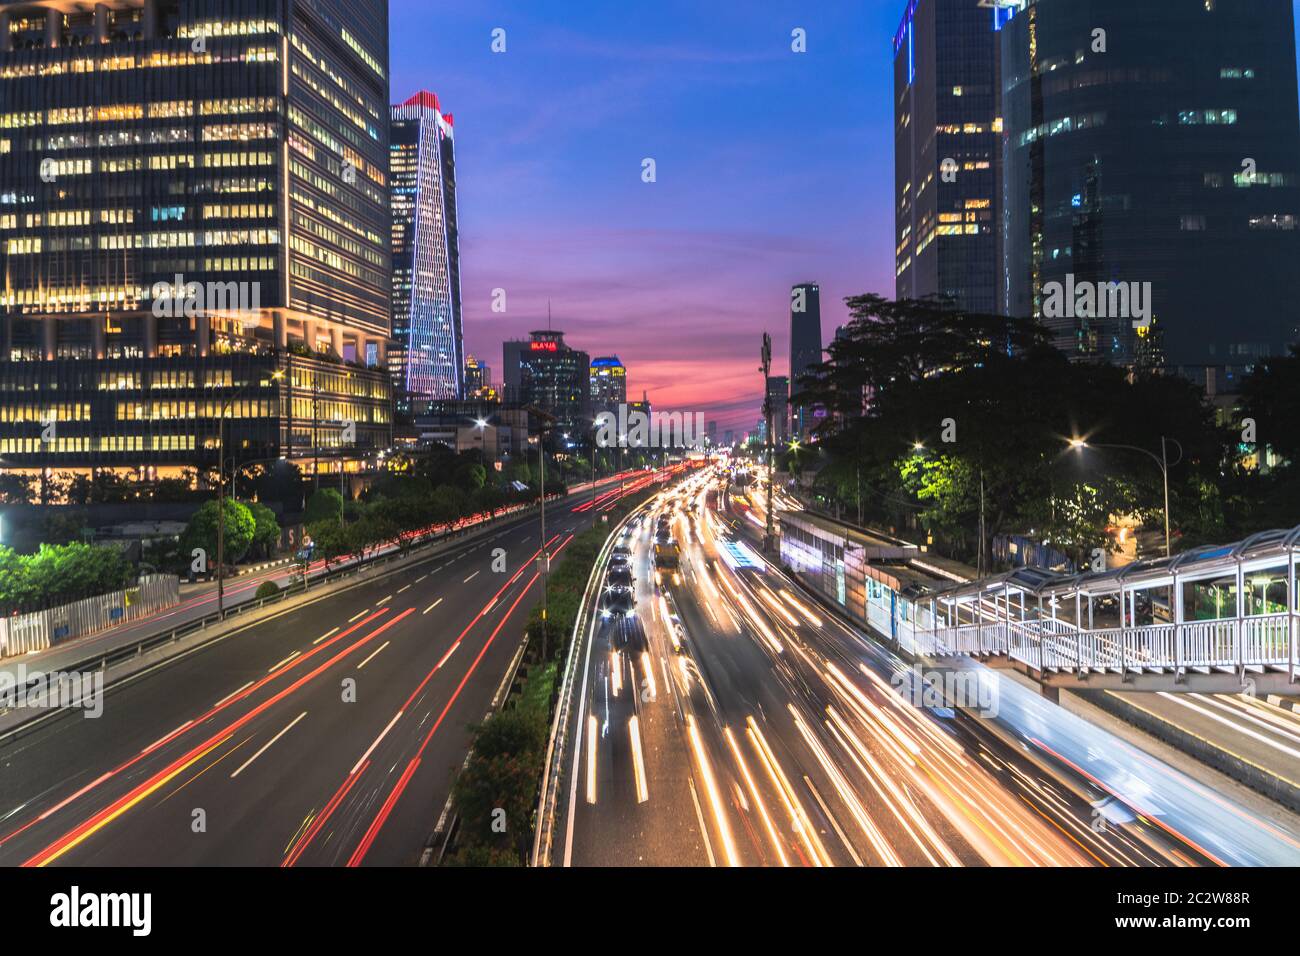 Das wunderschöne Gatot Subroto, Jakarta in the Night, bietet eine Mischung aus Architektur, Metropolkultur, Modernität und Nachtleben Stockfoto